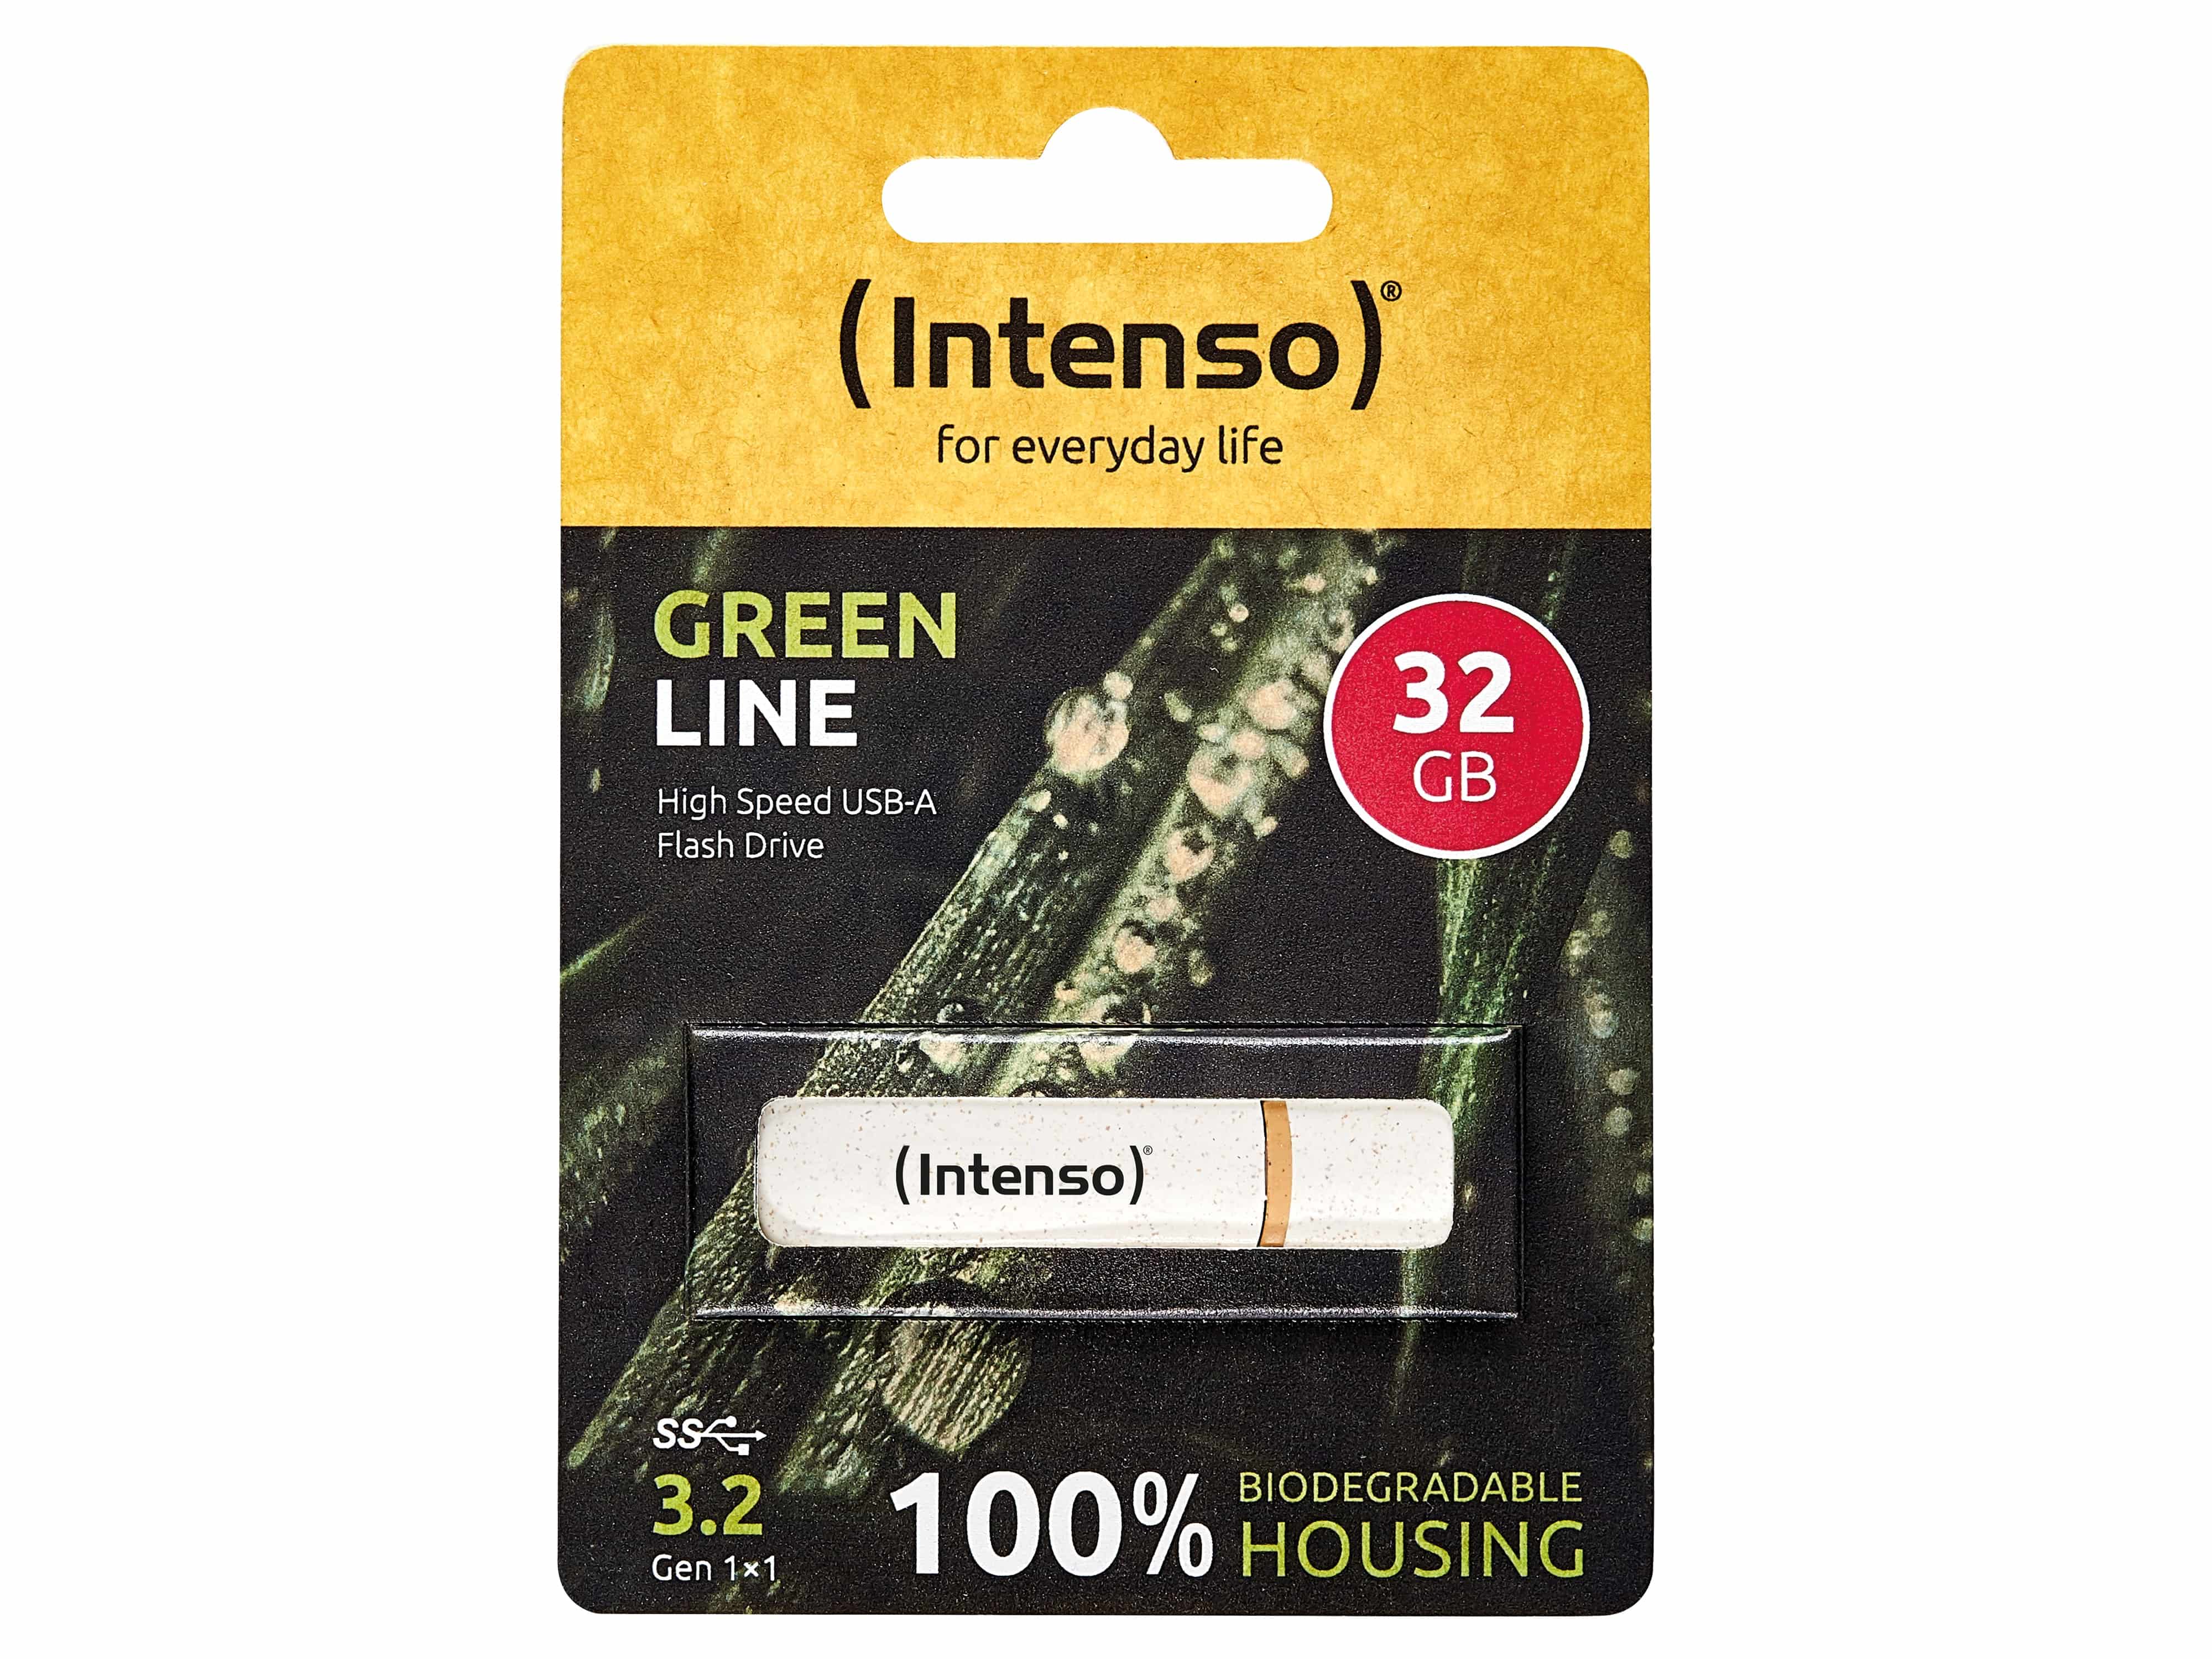 INTENSO USB 3.2-Stick Green Line, 32 GB, beige/braun